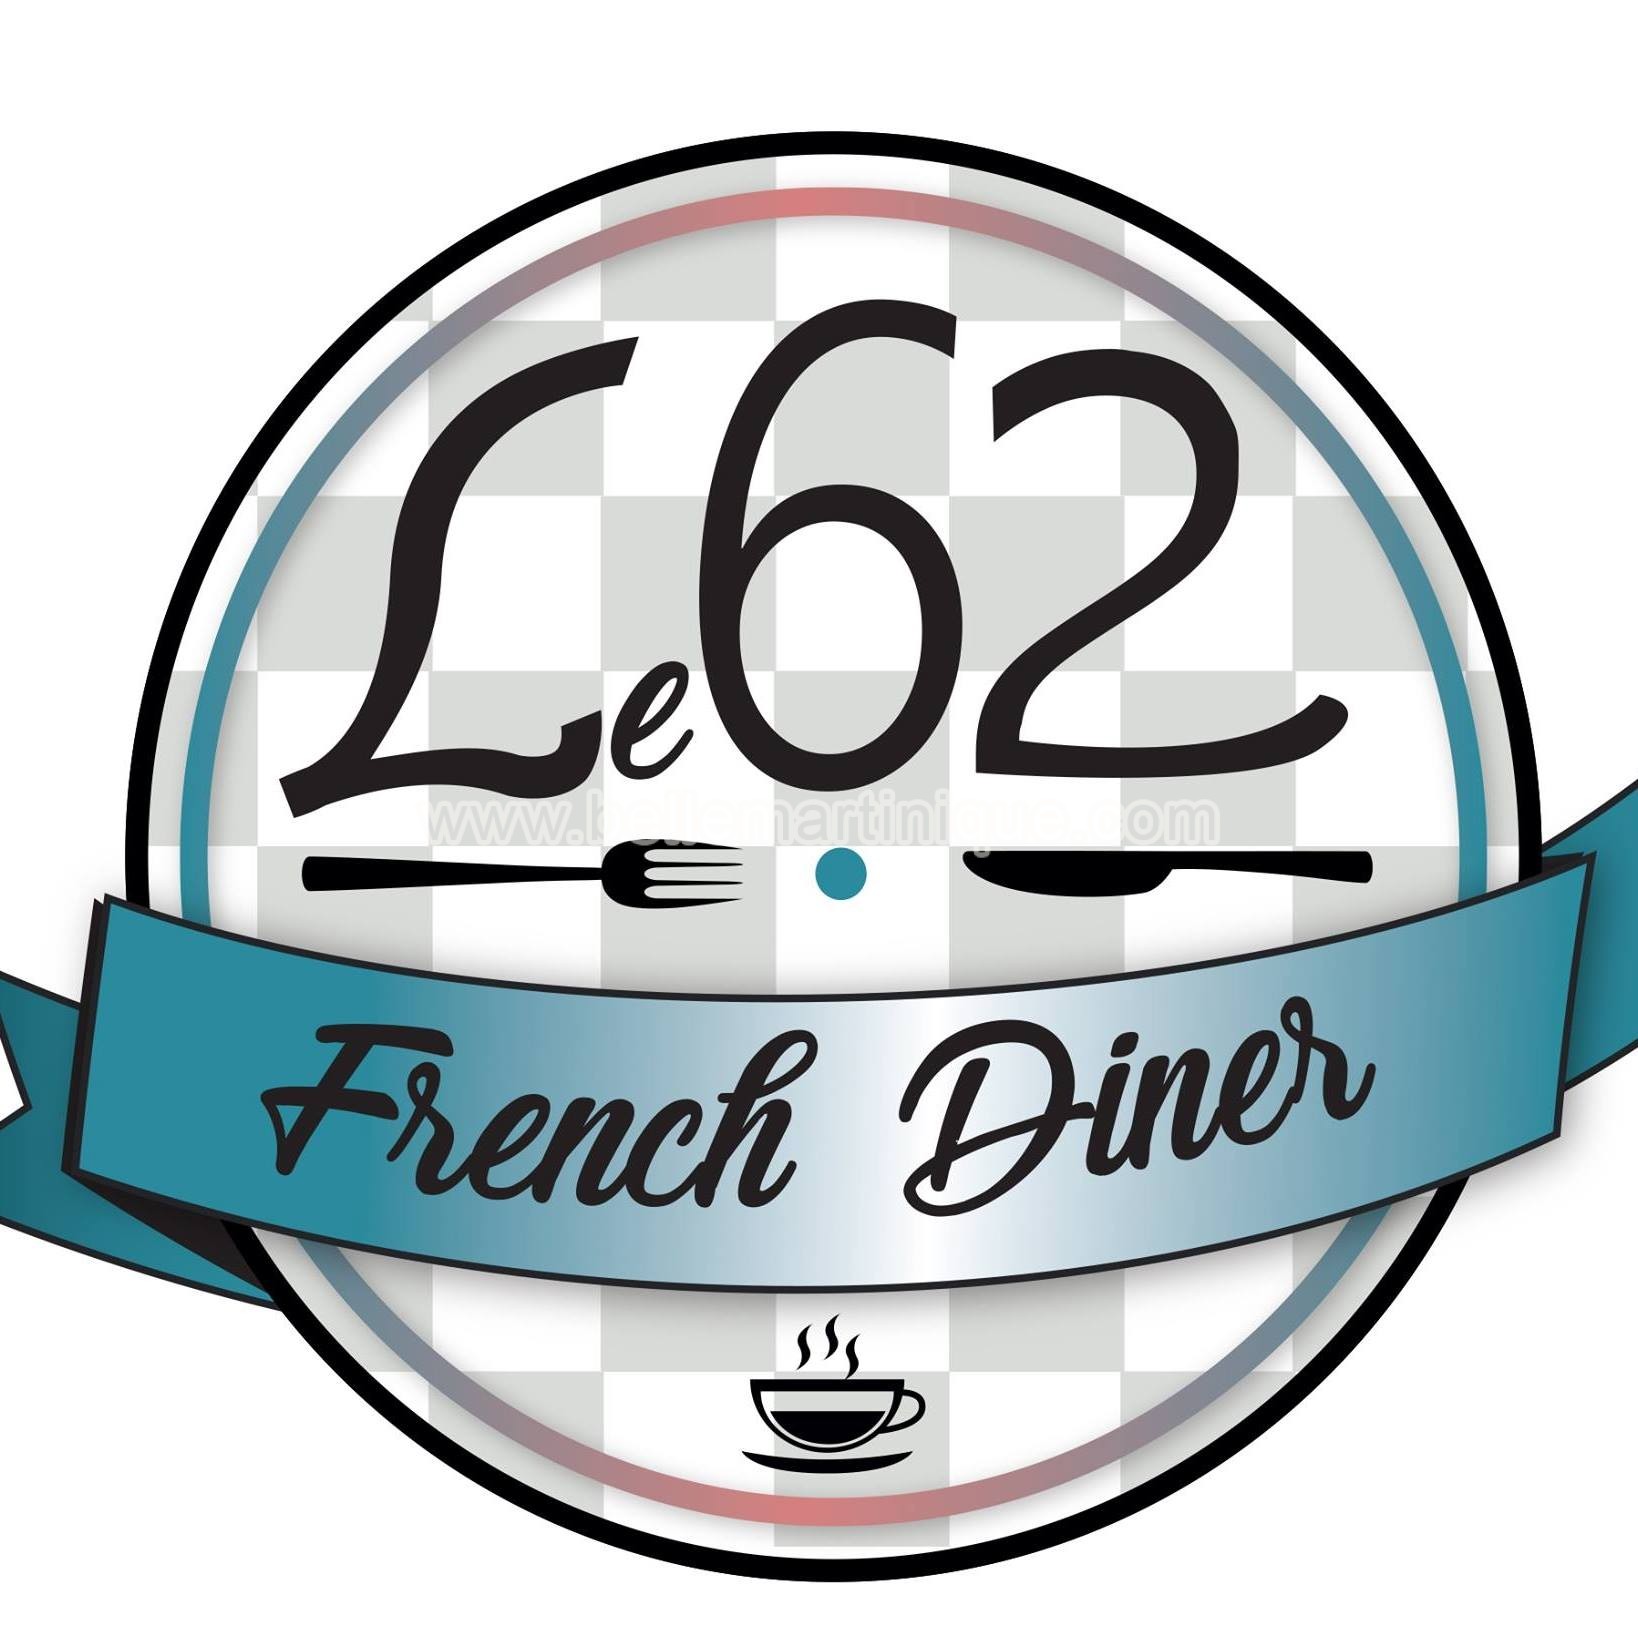 Le 62 French Diner - restaurant - fort de france - martinique